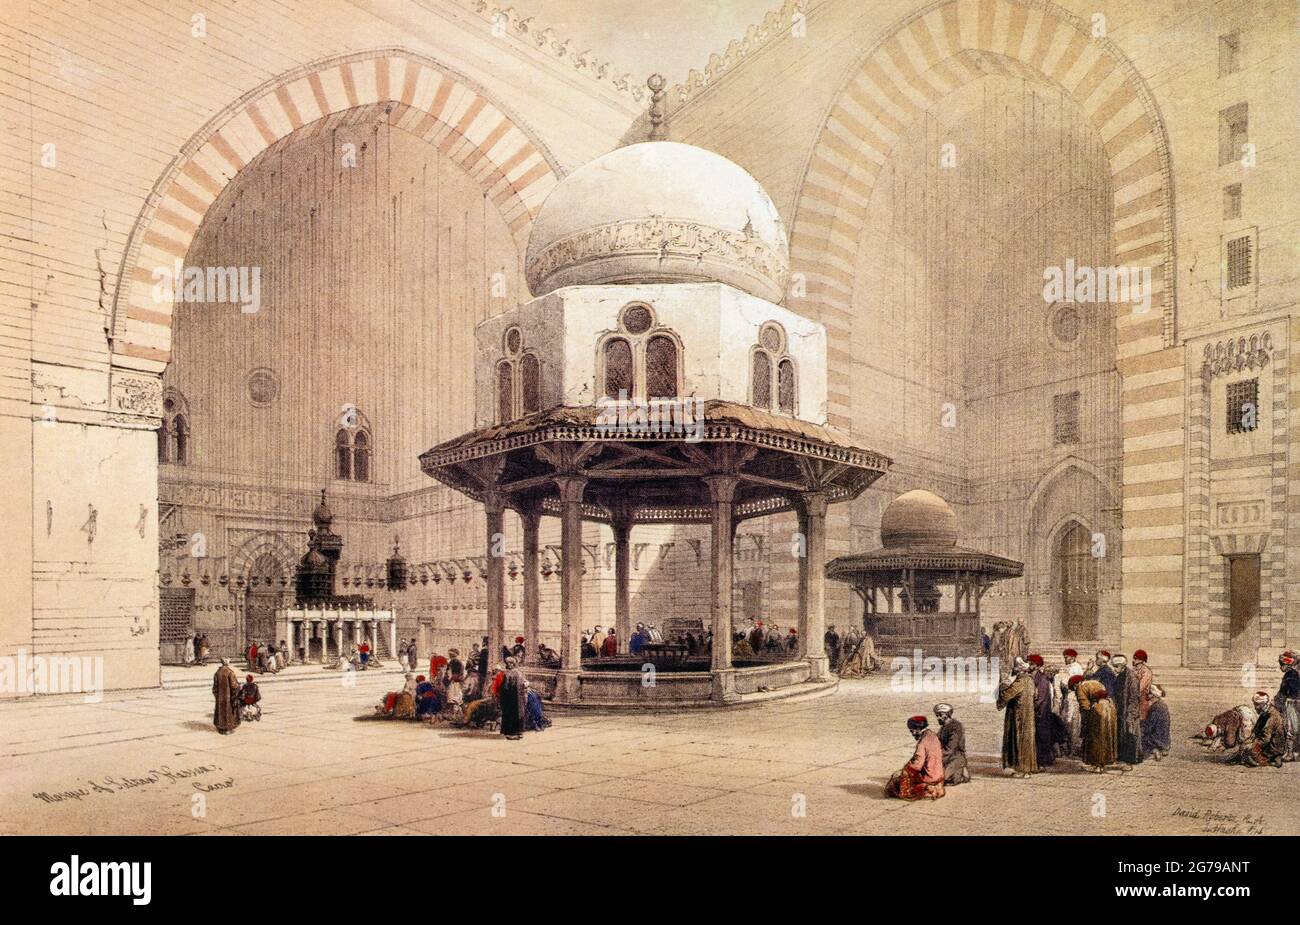 Innenraum der Moschee des Sultans Hassan. Von dem schottischen Künstler David Roberts, 1796 - 1864. Roberts schuf dieses Werk nach seinen Reisen durch den Nahen Osten in den Jahren 1838-1839. Stockfoto